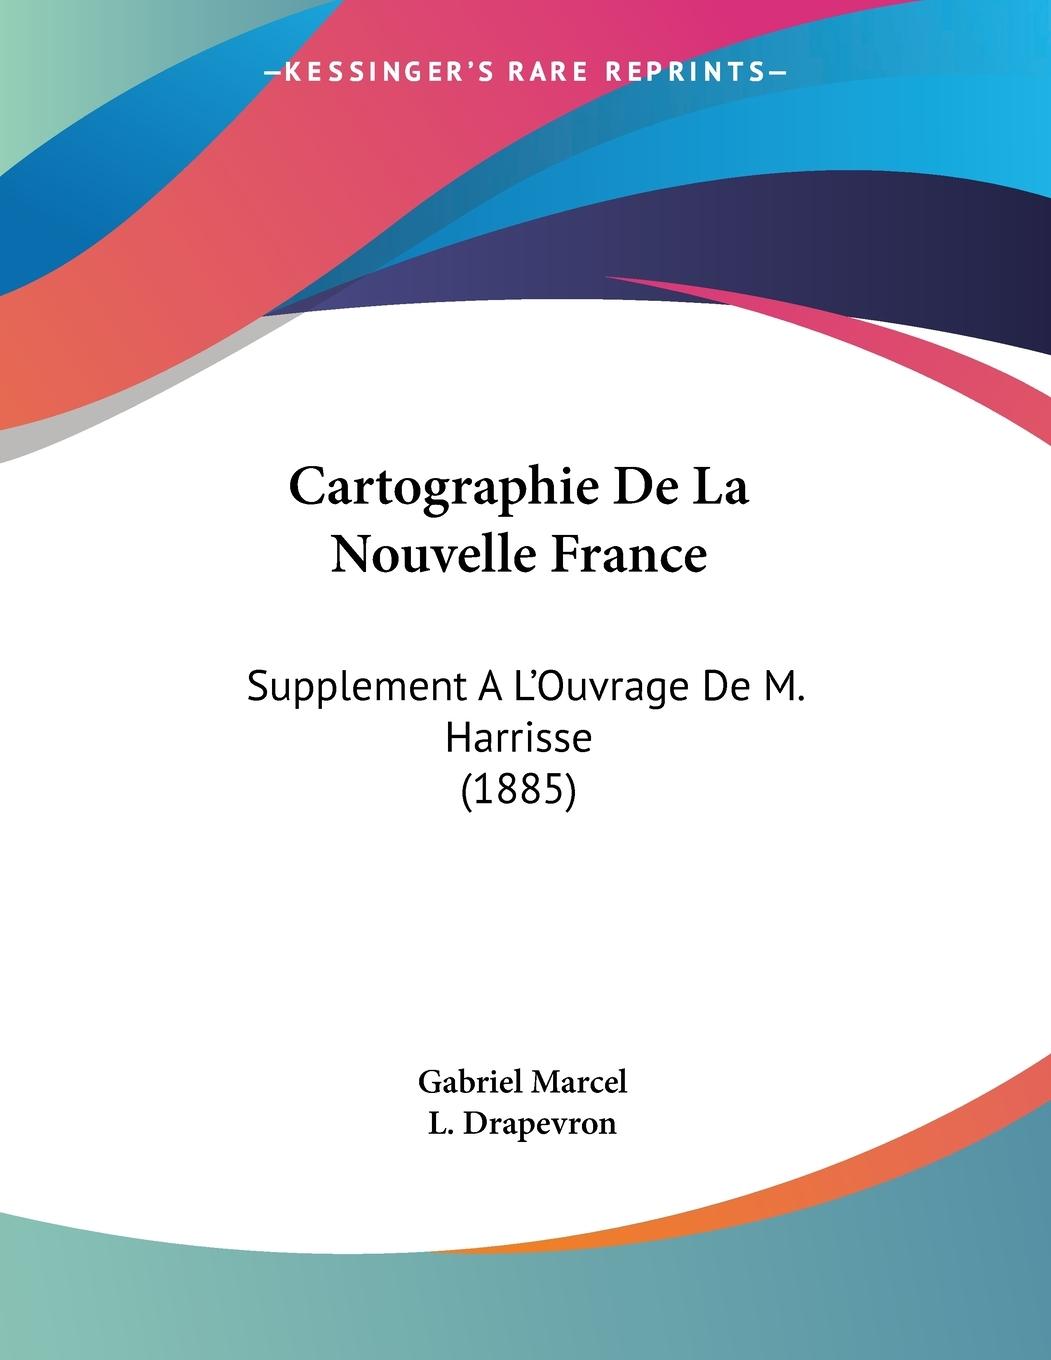 Cartographie De La Nouvelle France - Marcel, Gabriel Drapevron, L.